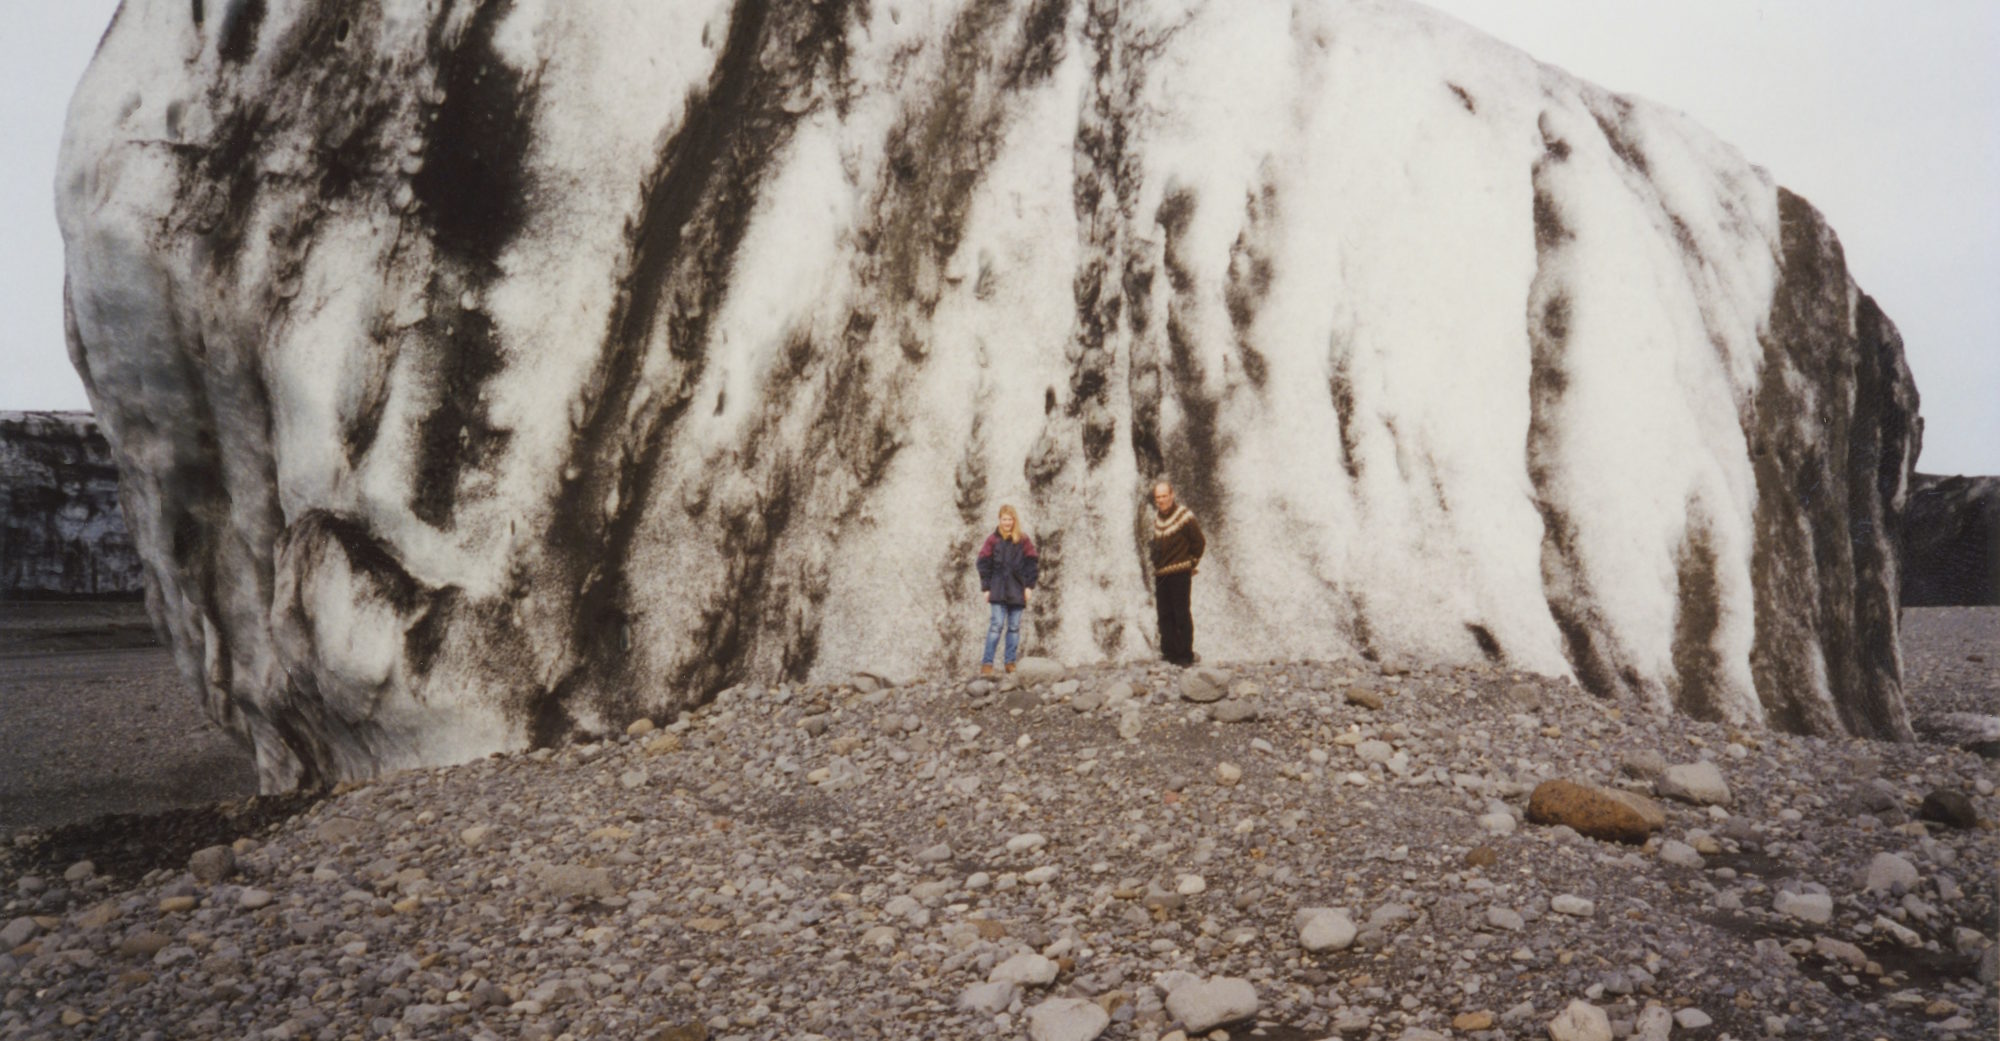 Na de jökulhlaup van 1996 trokken veel mensen naar de Skeiðarársandur om de enorme ijsbergen te zien. De personen staan op een hoogte en dus waarschijnlijk aan de achterkant. Bron: eldsveitir.is.